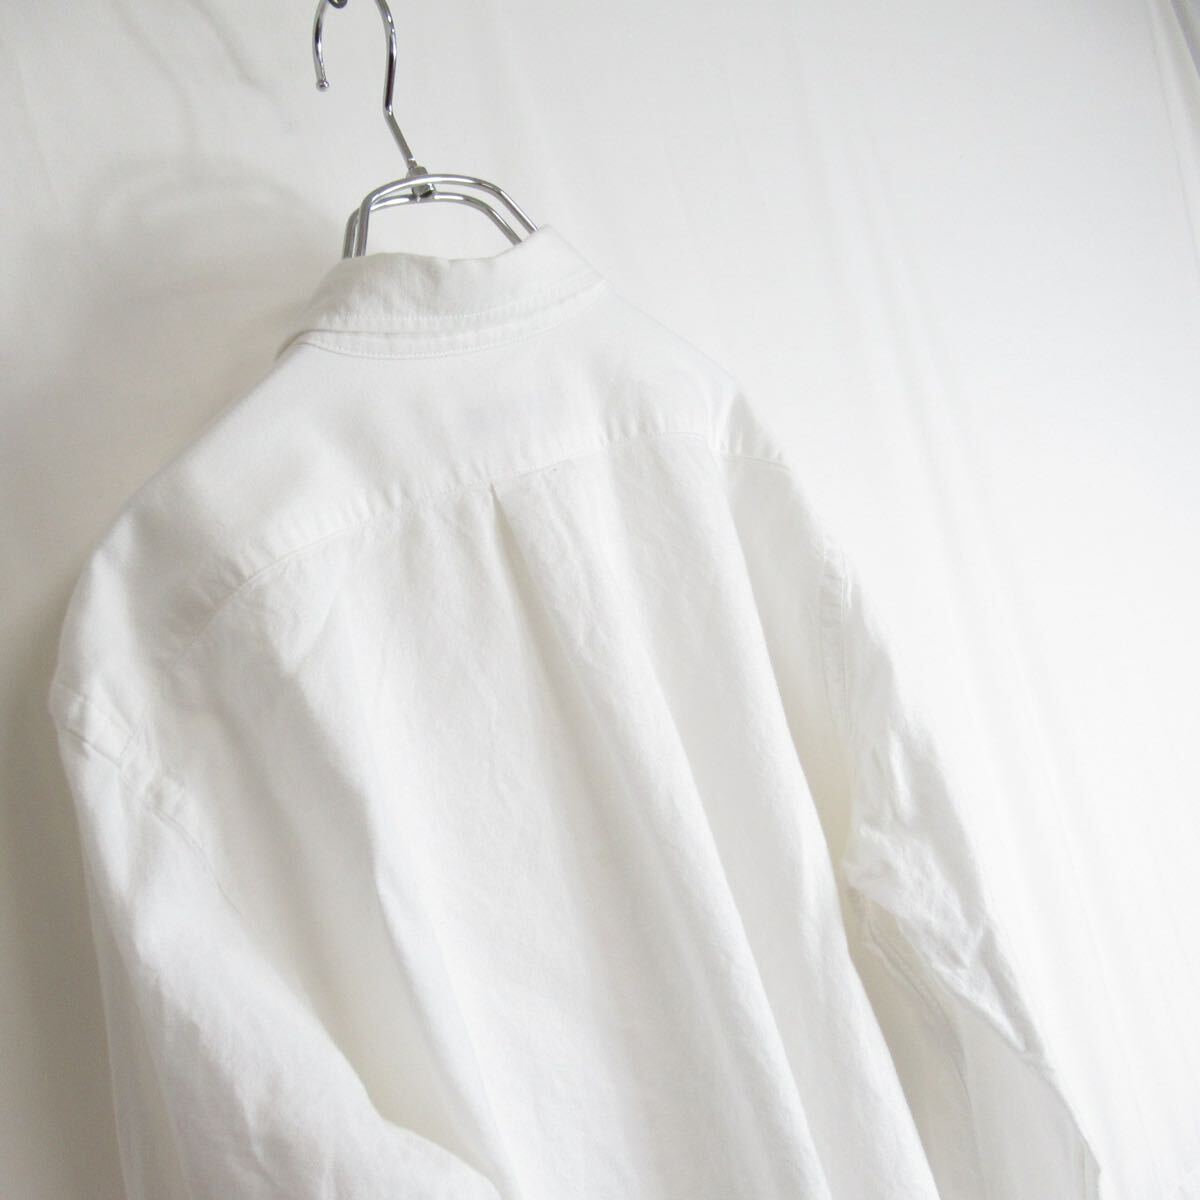 LACOSTE ロゴ デザイン ボタンダウン ホワイト 白 シャツ 40 M-Lサイズ レディース ラコステ 長袖シャツ カジュアル トップス フレンチ_画像6